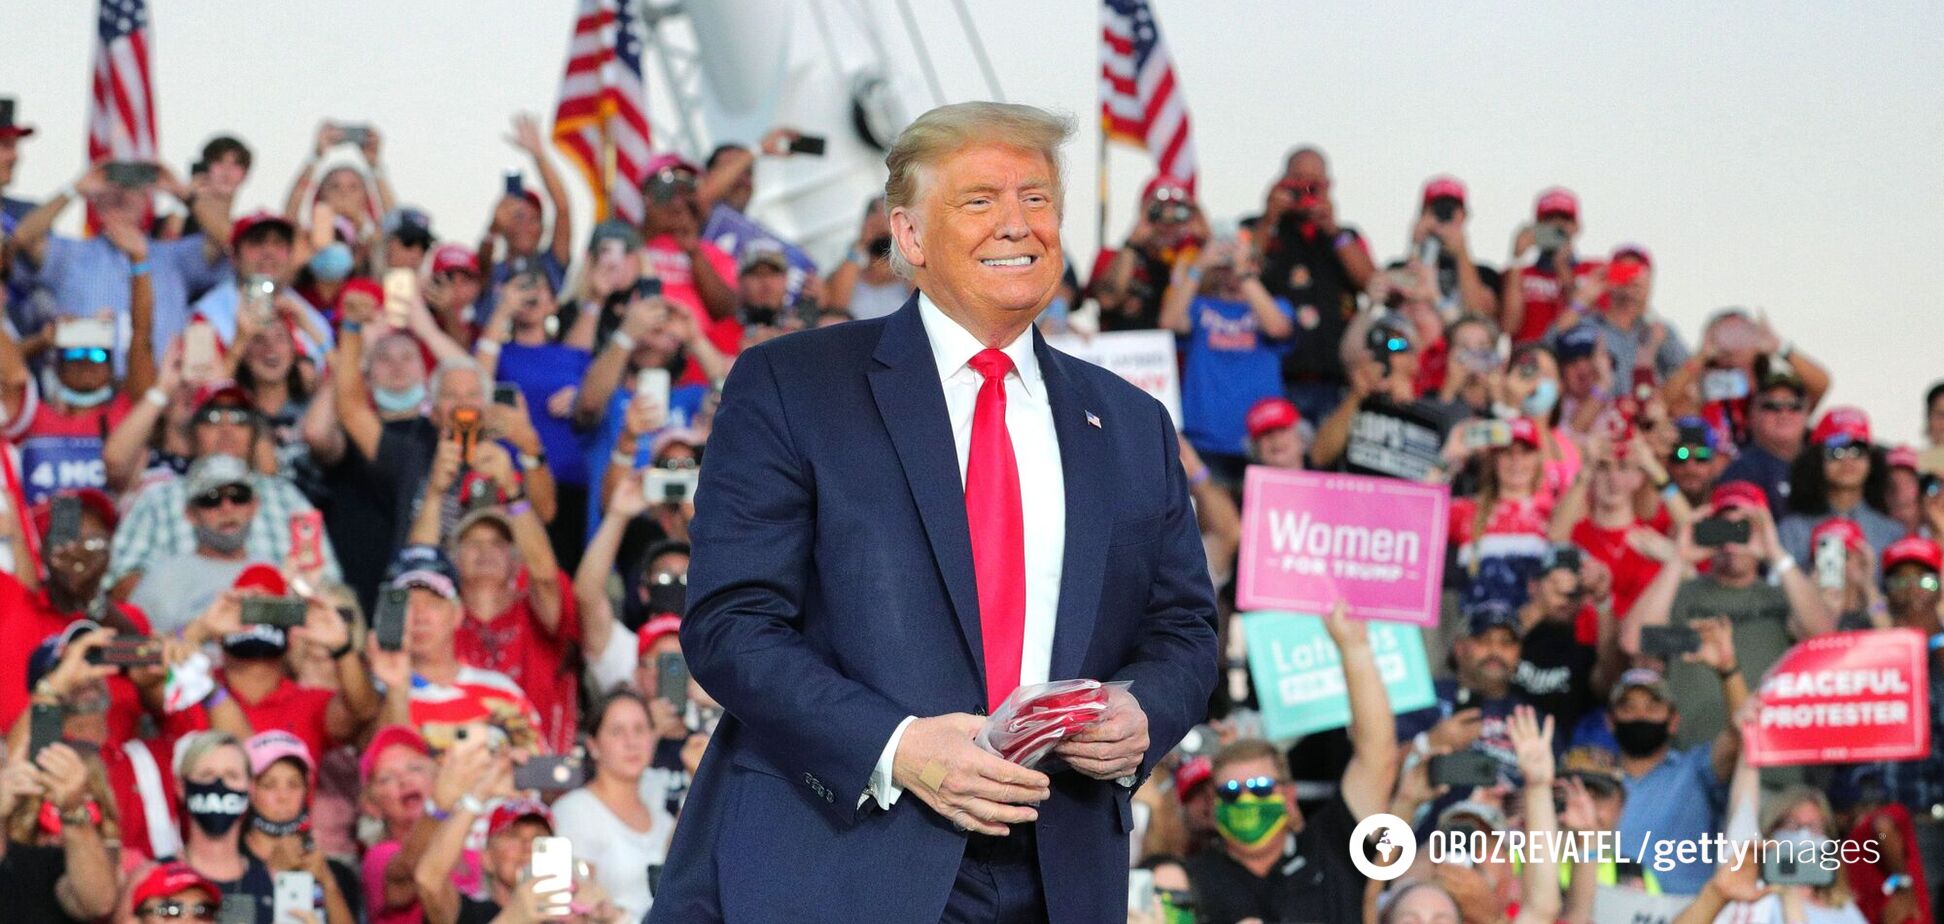 Трамп вышел на многолюдный митинг с открытым лицом и бросал маски в толпу. Фото и видео